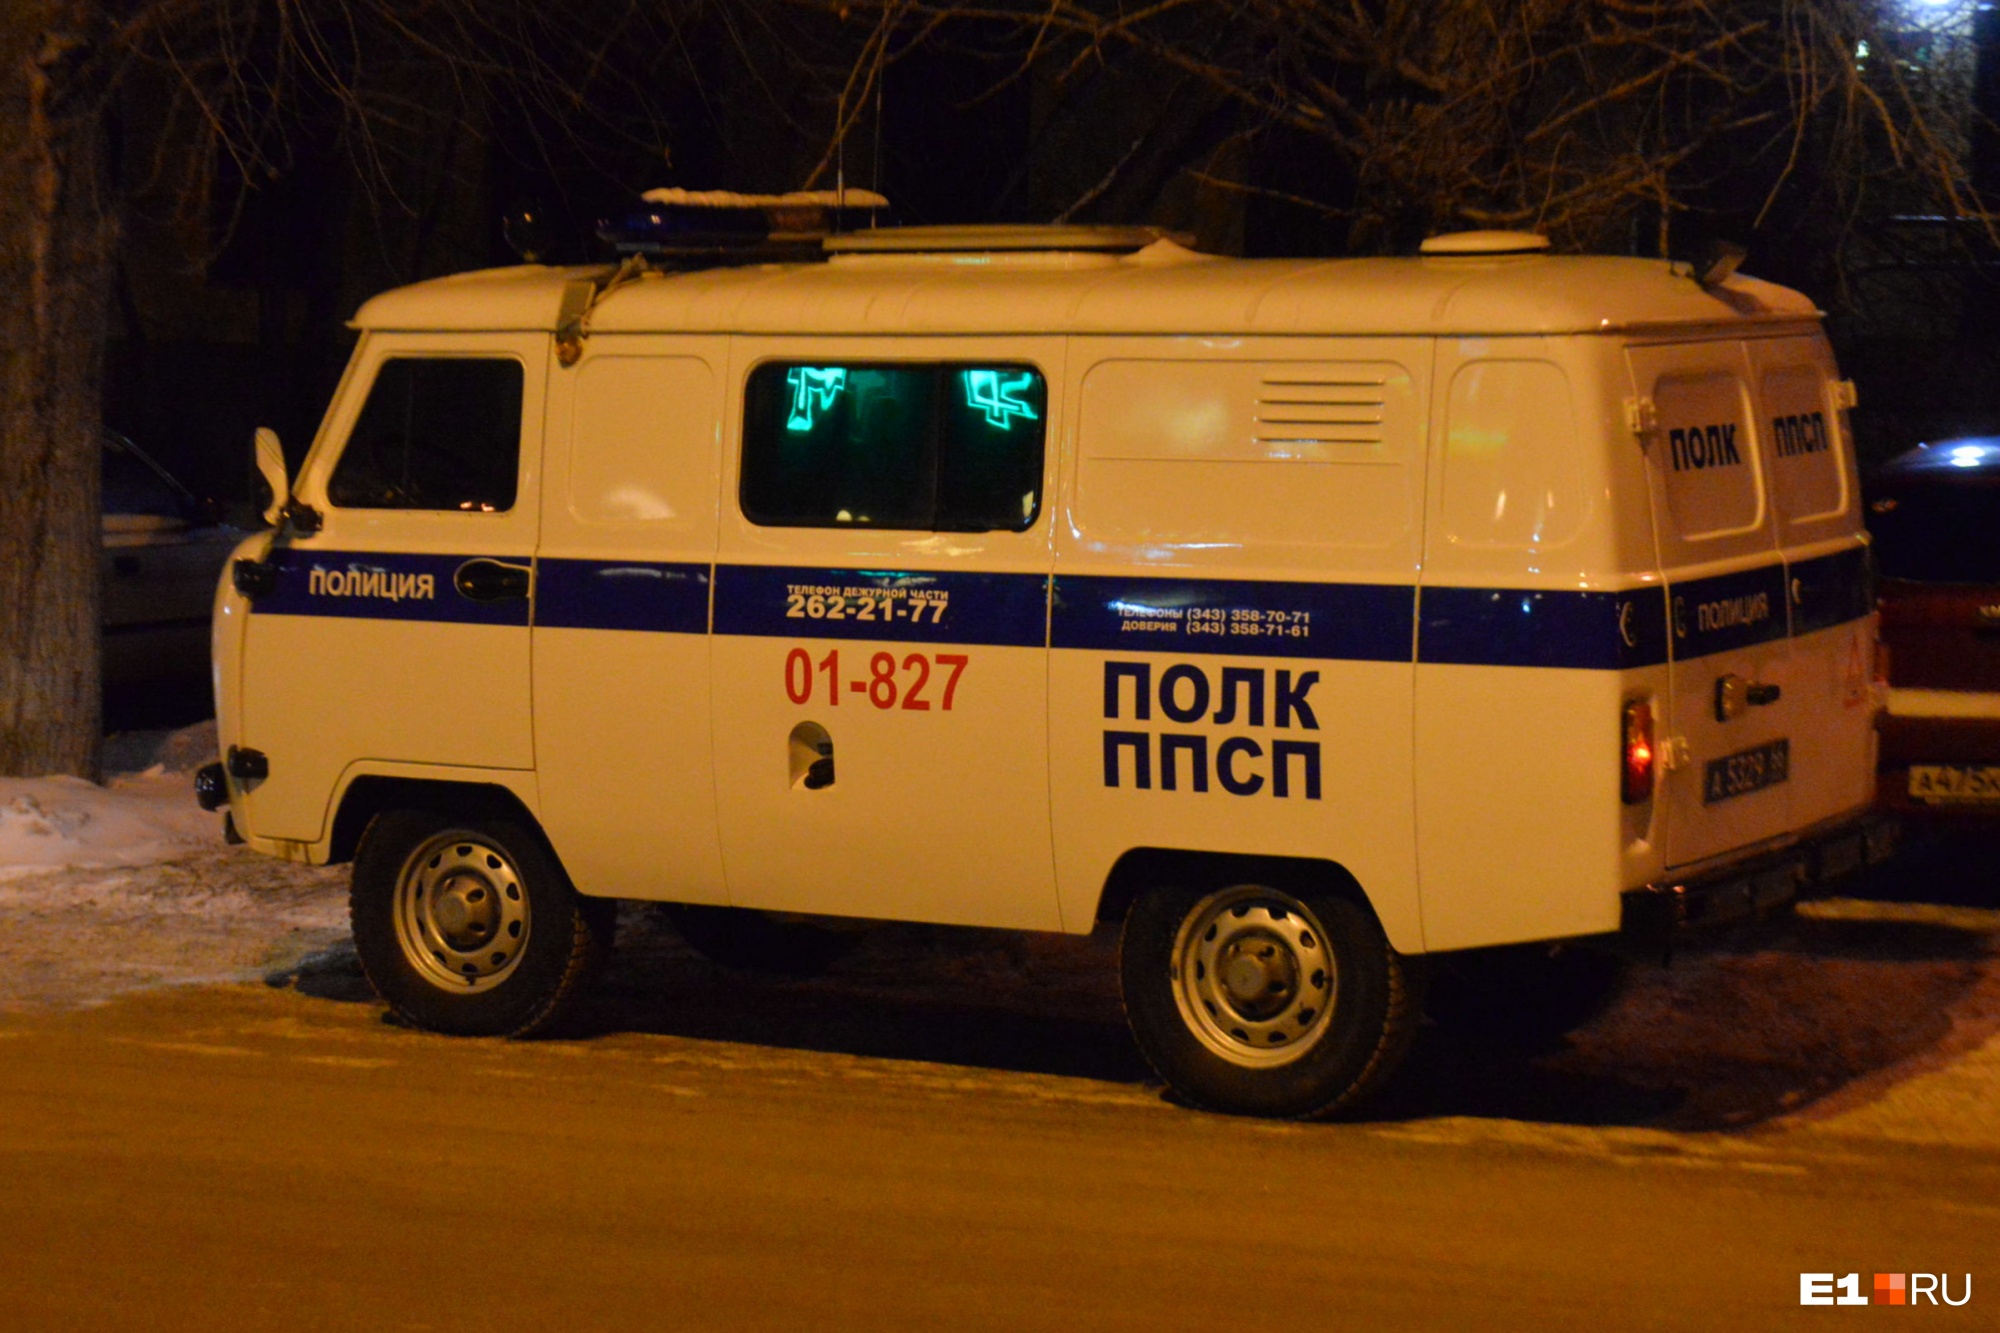 В Екатеринбурге в нескольких метрах от дома нашли пропавшую 11-летнюю школьницу